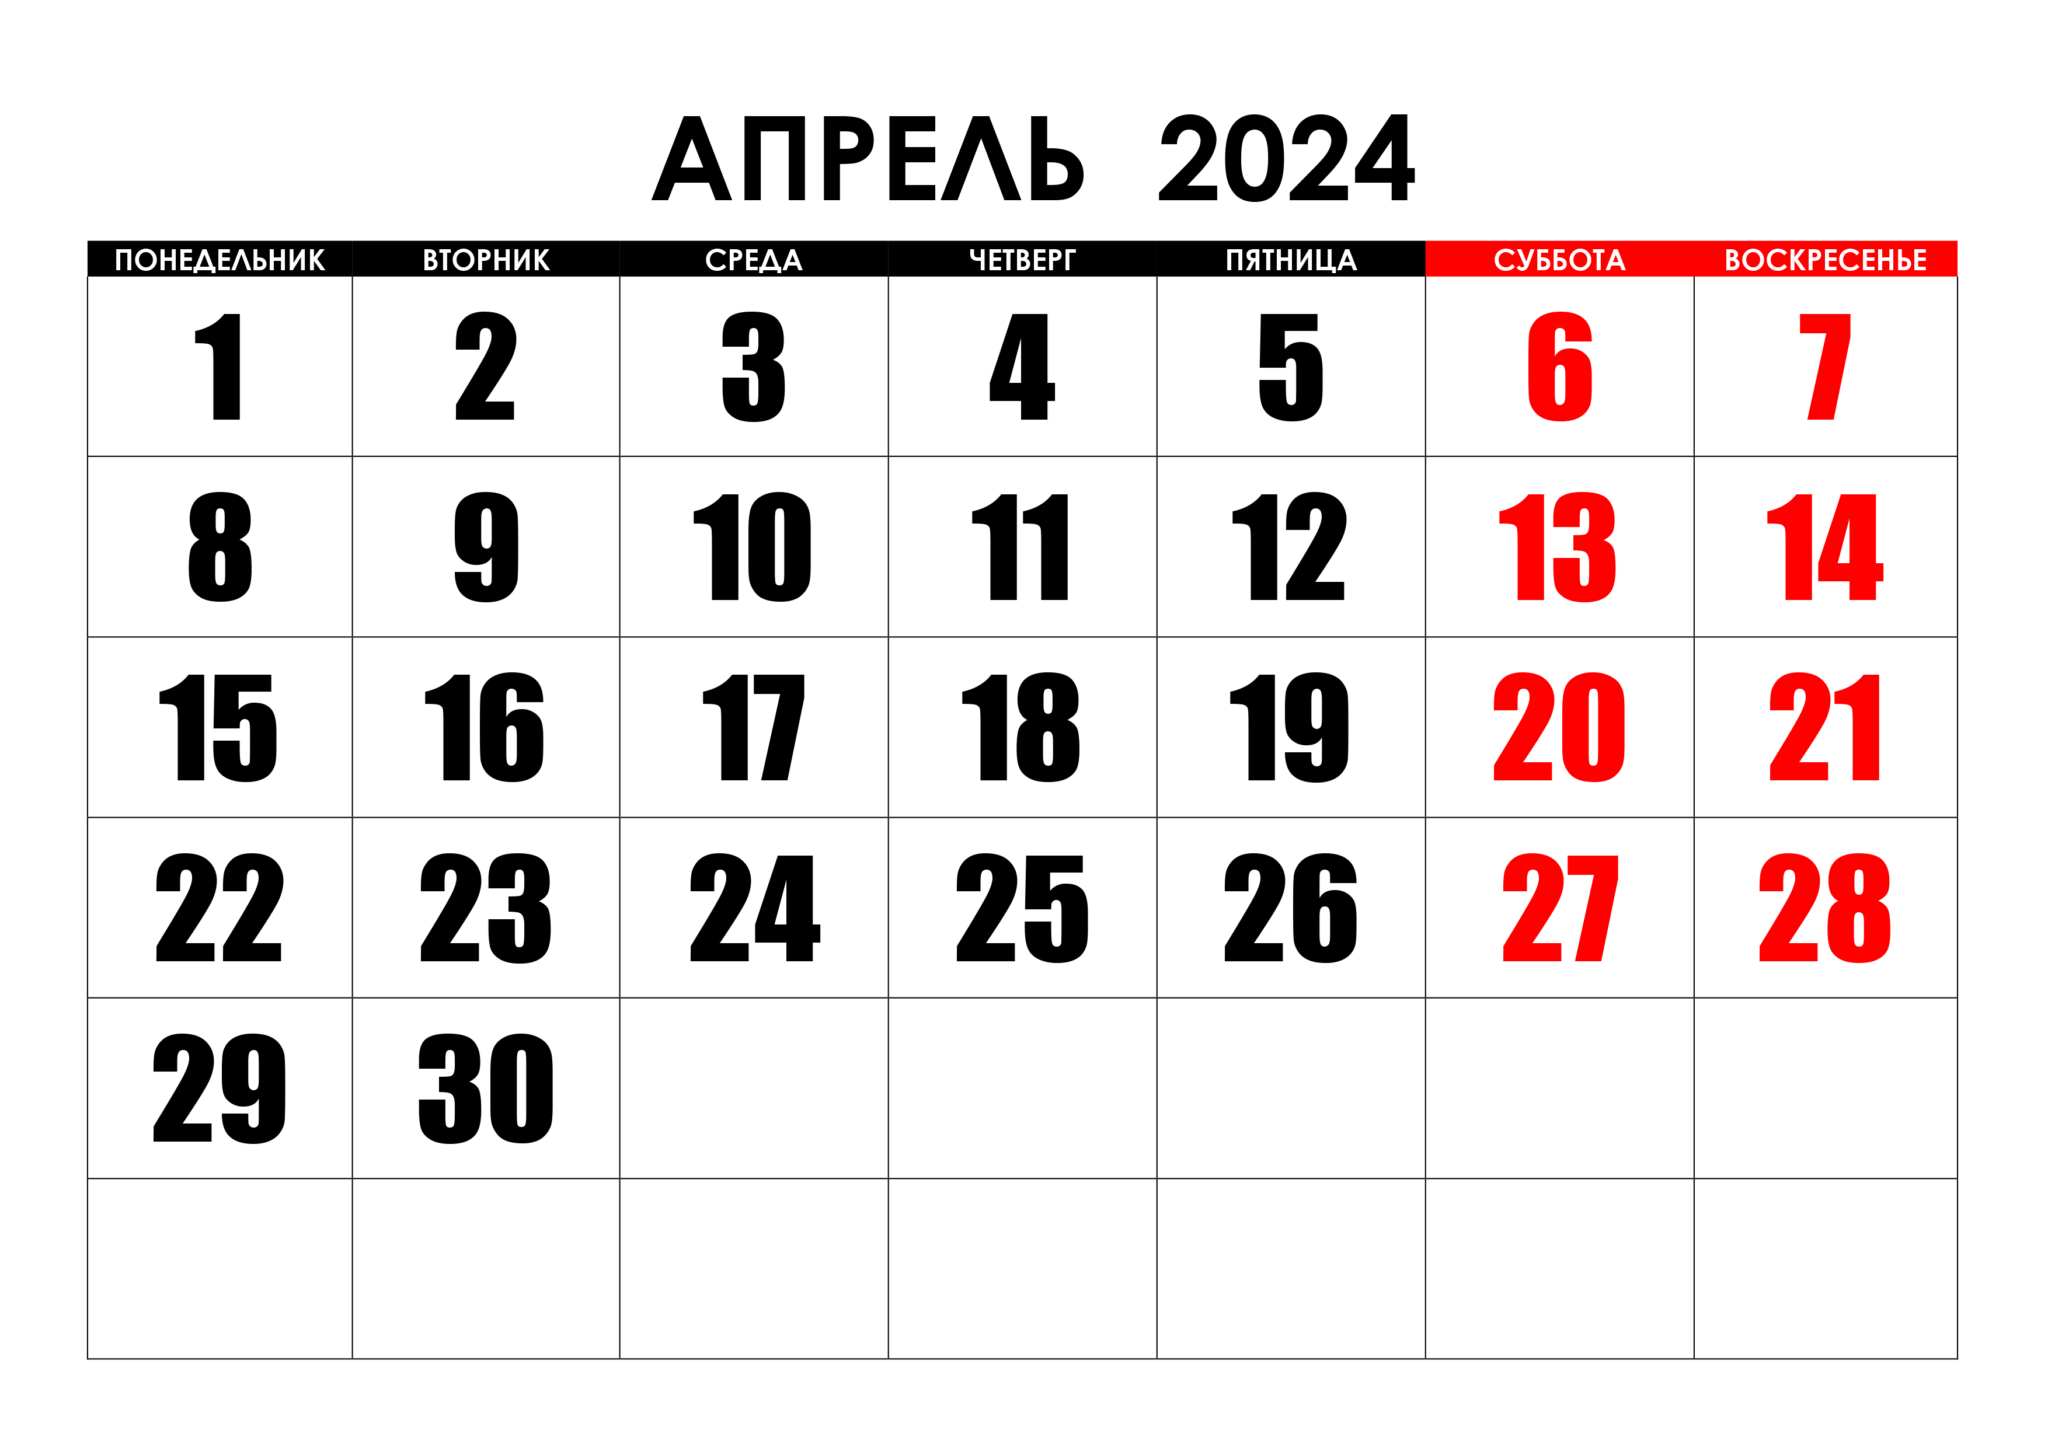 Сколько дней осталось до мая 2024г. Календарь август 2022. Календарь на май 2022 года. Календарь на август 2022г. Календарь на пвгуст 2022года.